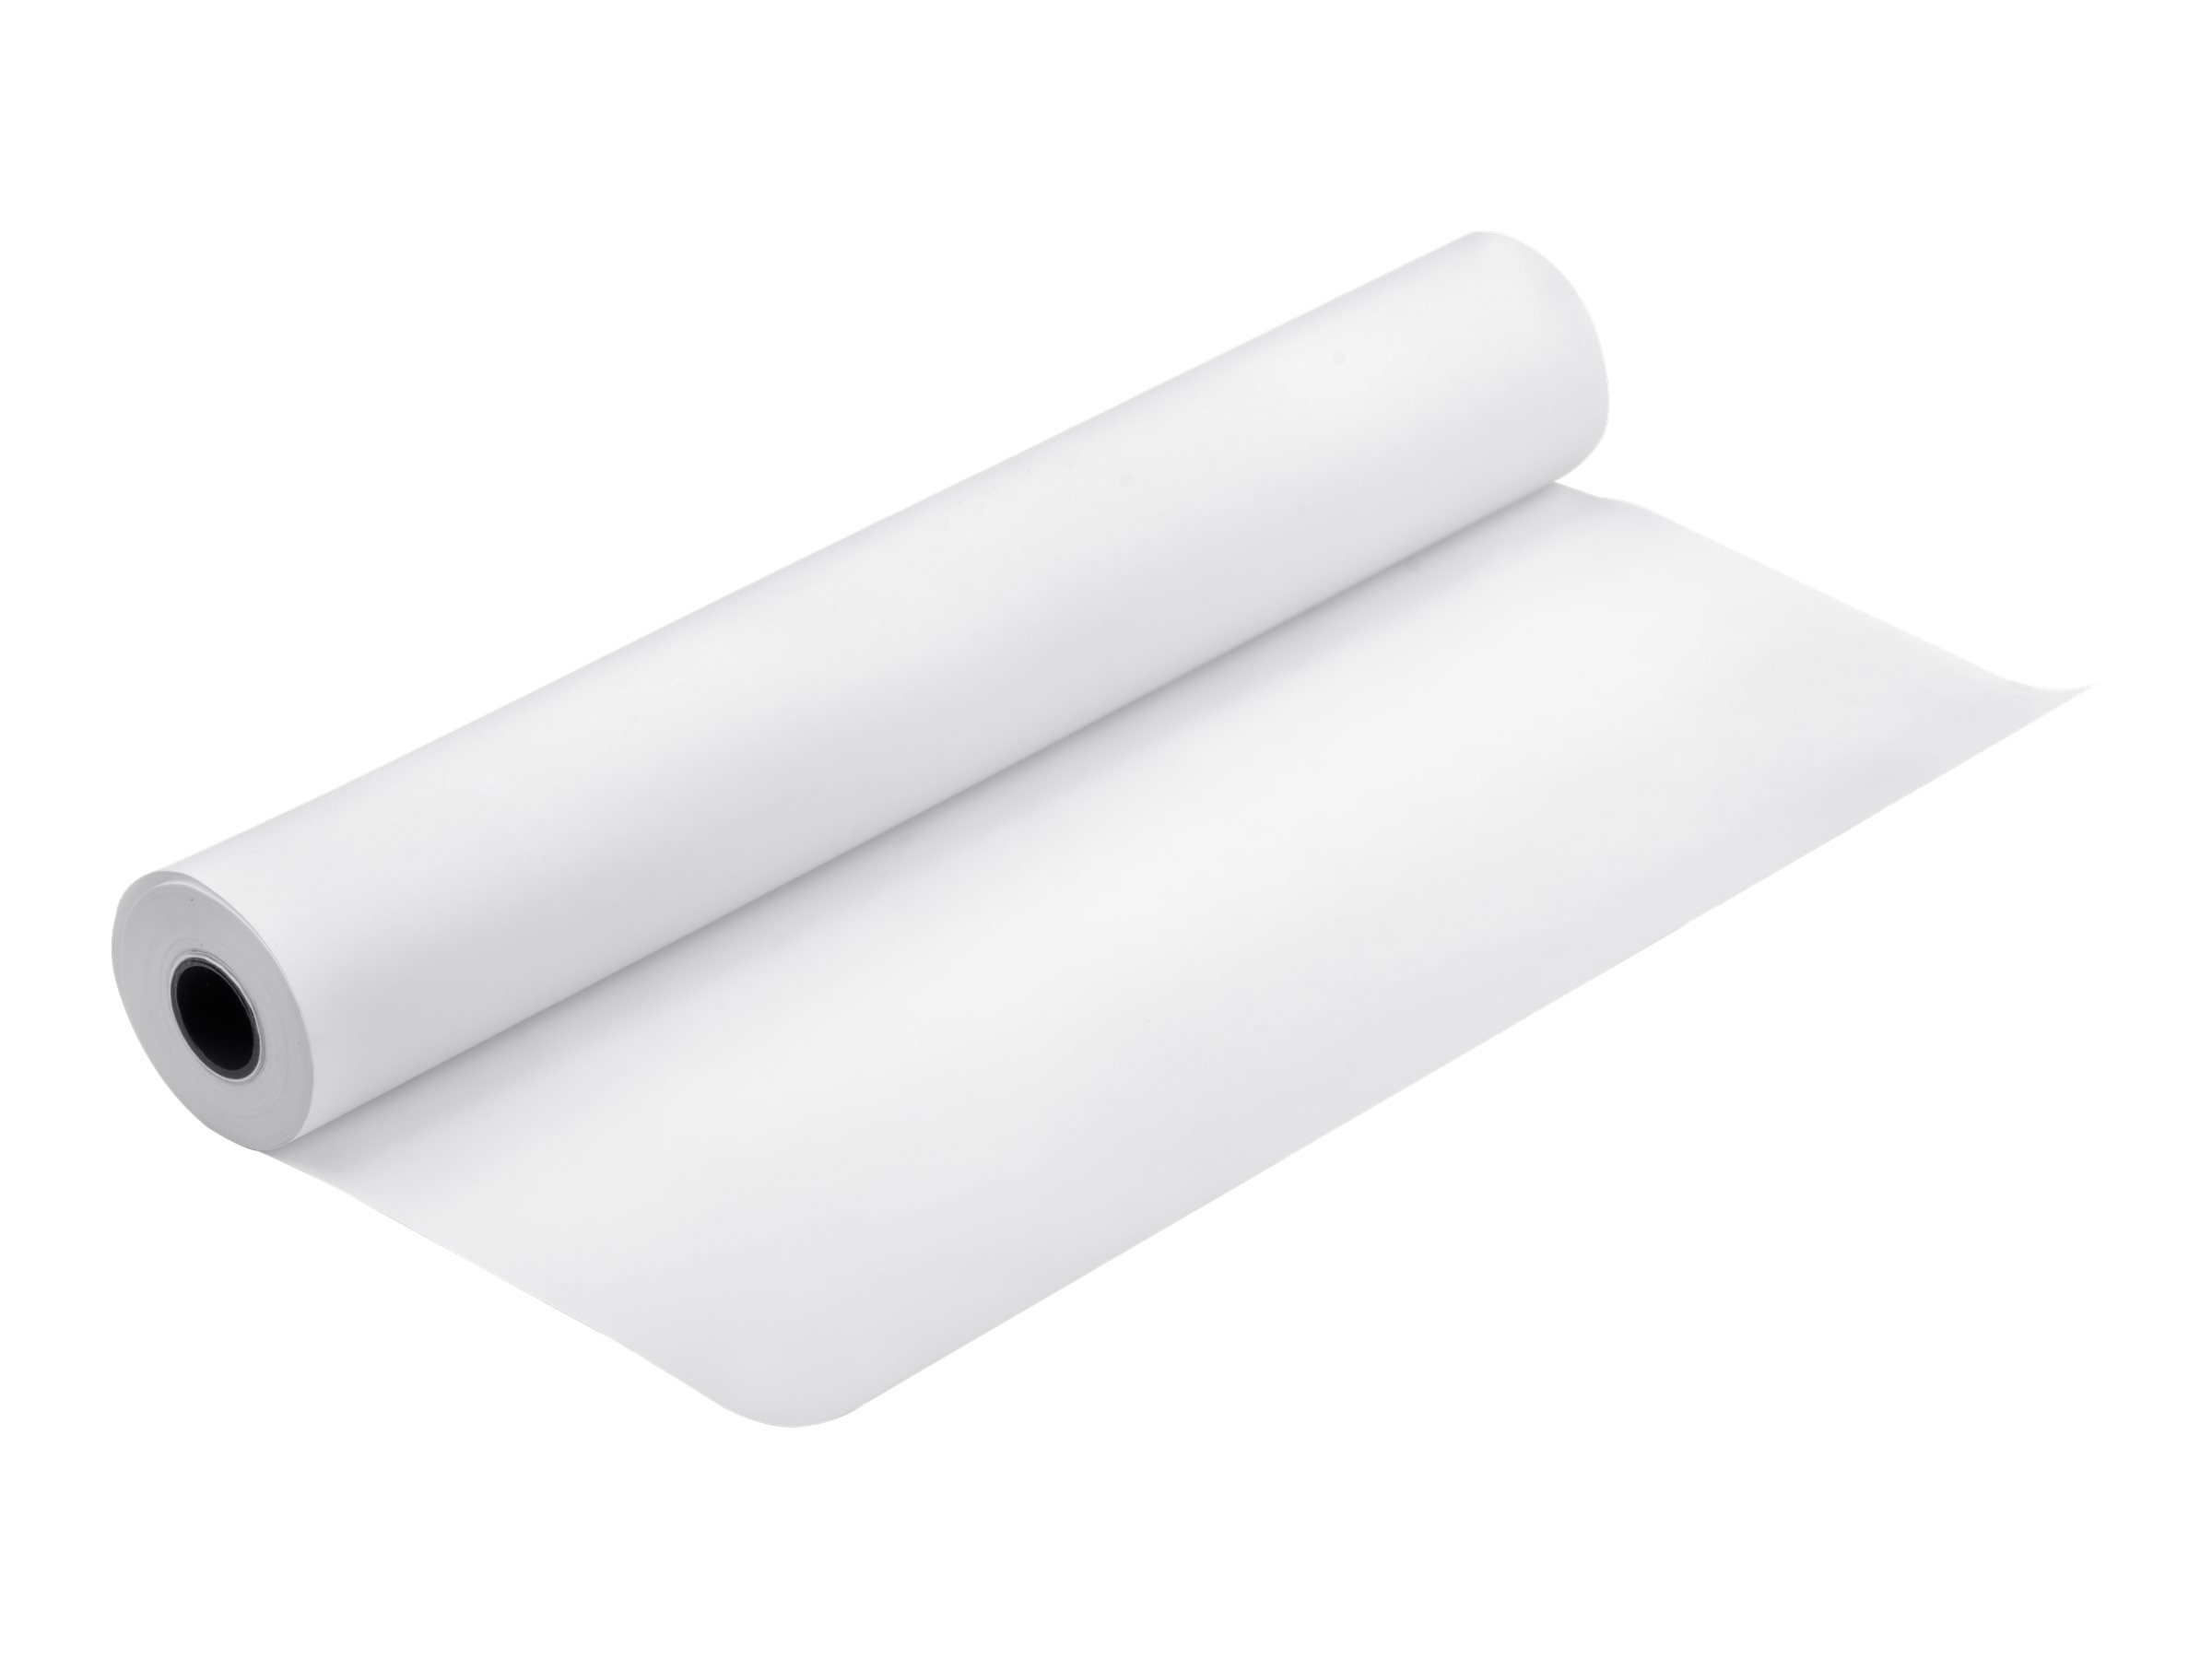 Epson Doubleweight Matte Paper - Mat - Rouleau A1 (61,0 cm x 25 m) - 180 g/m² - 1 rouleau(x) papier - pour SureColor SC-P10000, P20000, P7500, P9500, T2100, T3100, T3400, T3405, T5100, T5400, T5405 - C13S041385 - Rouleaux de papier